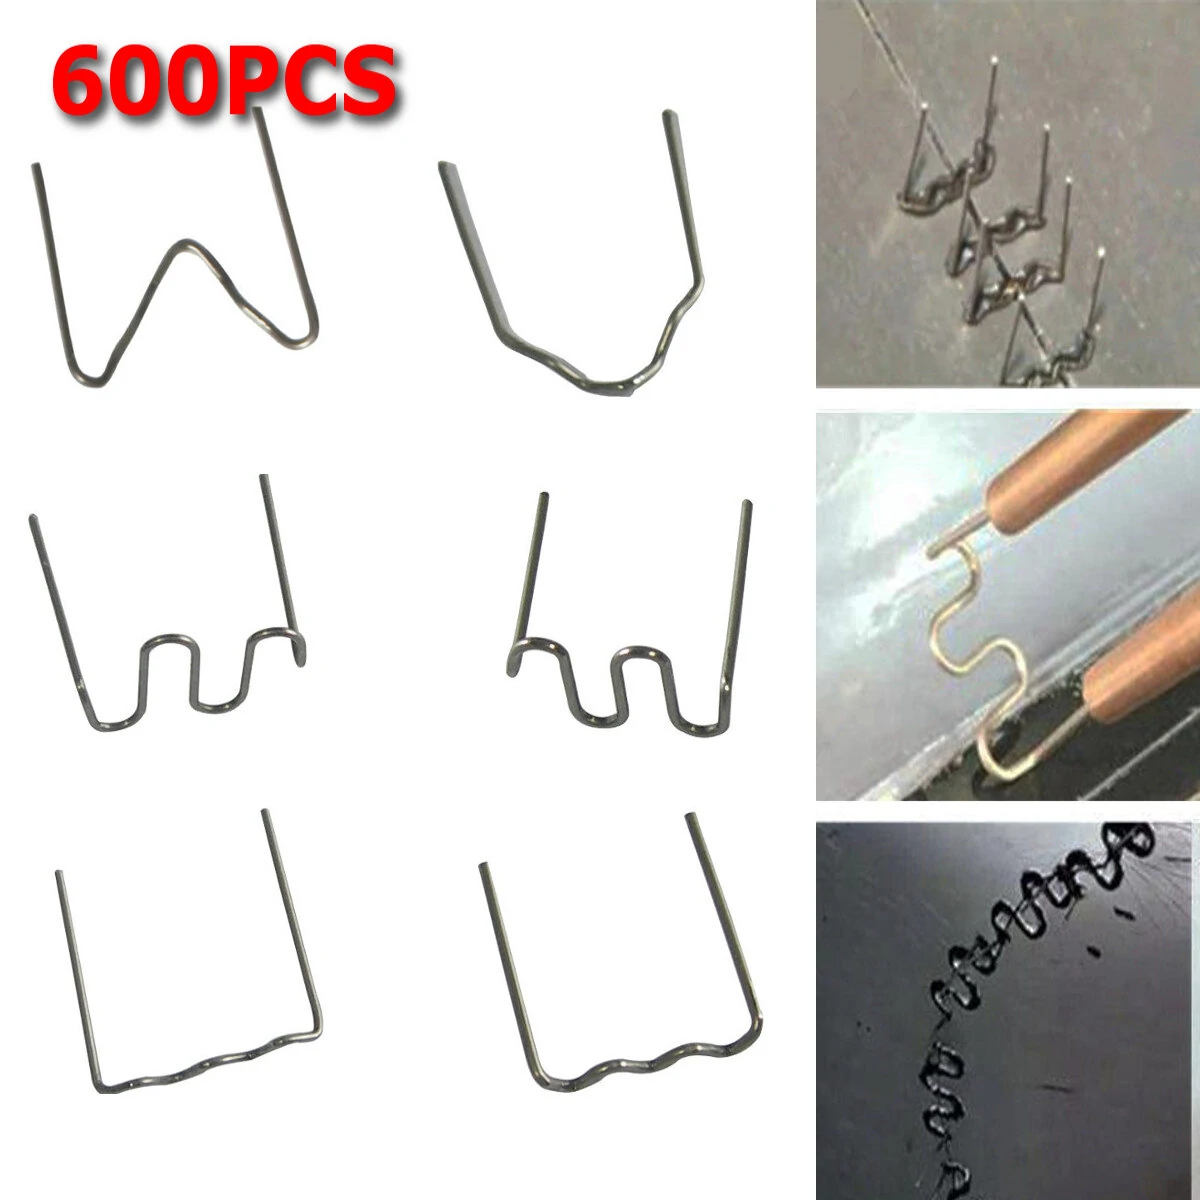 600pcs Standard Pre Cut 0.6 0.8mm Hot Staples For Plastic Stapler Car Repair Welders